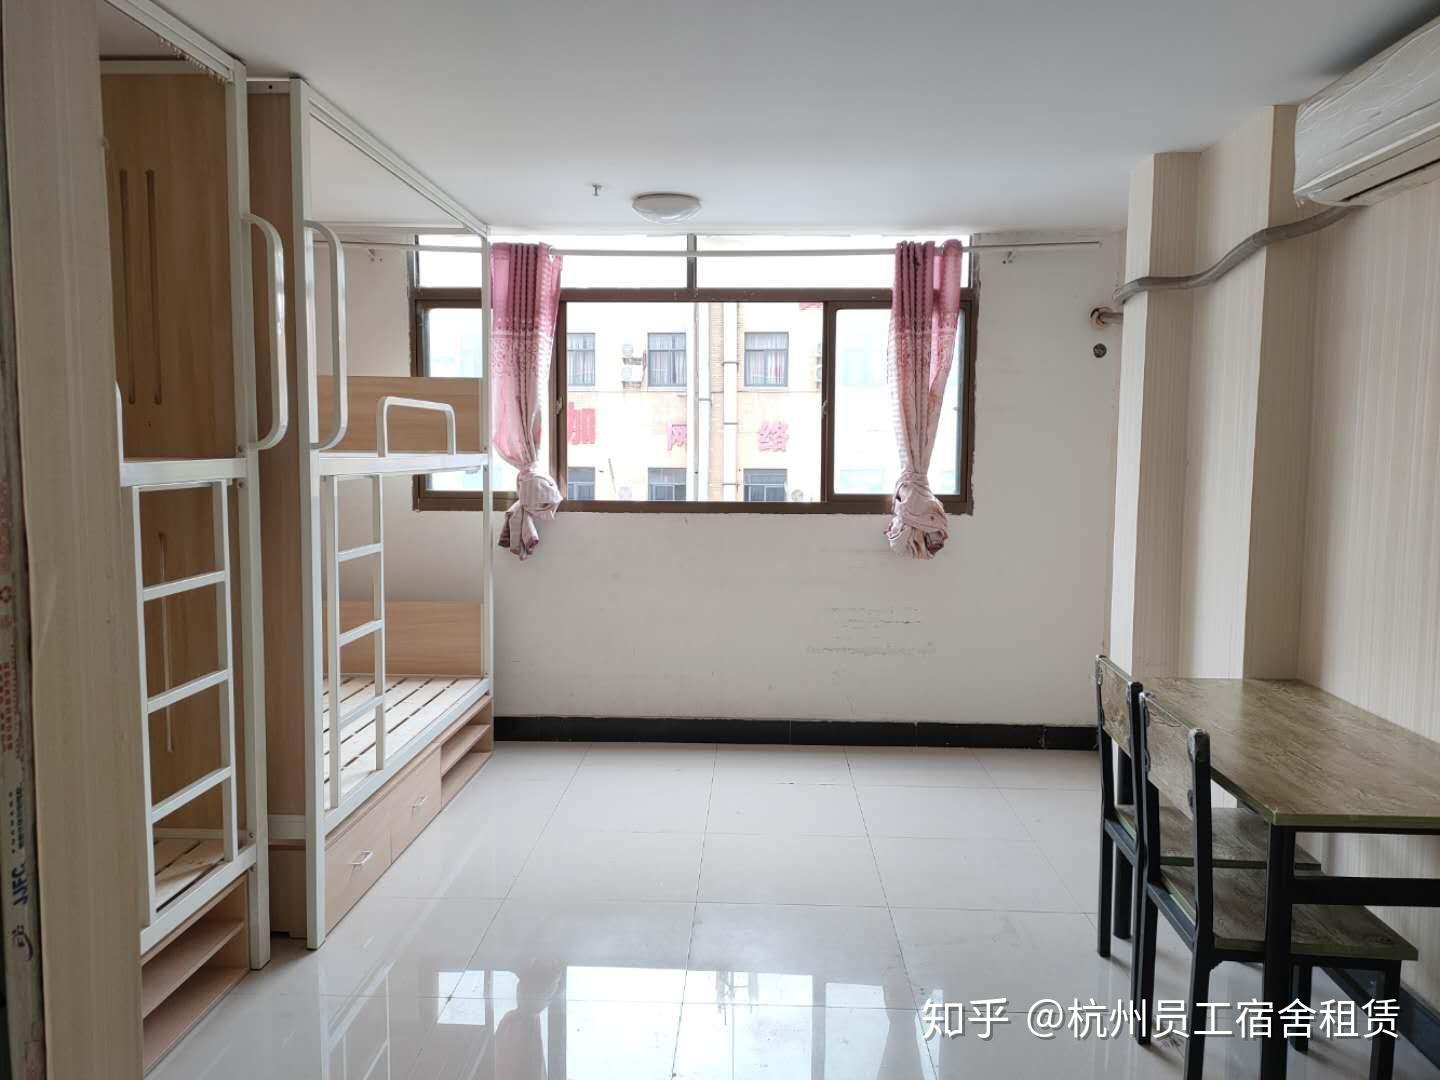 杭州租赁员工宿舍丰来品牌,白领,蓝领公寓 单间,2人间,4人间,6人间多